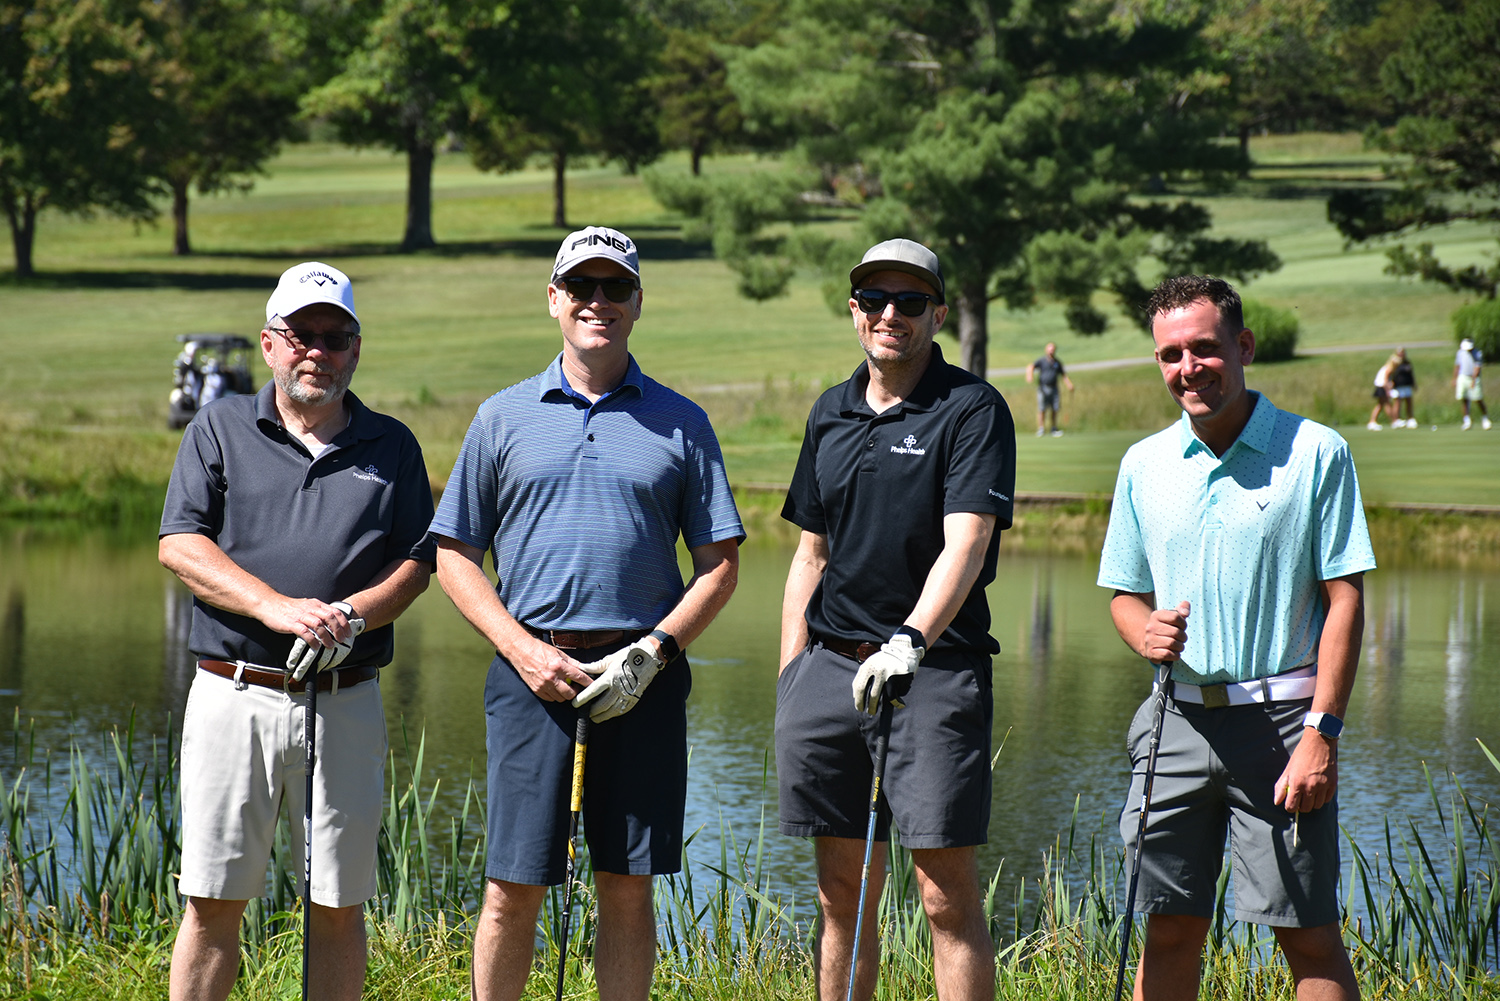 Four golfers